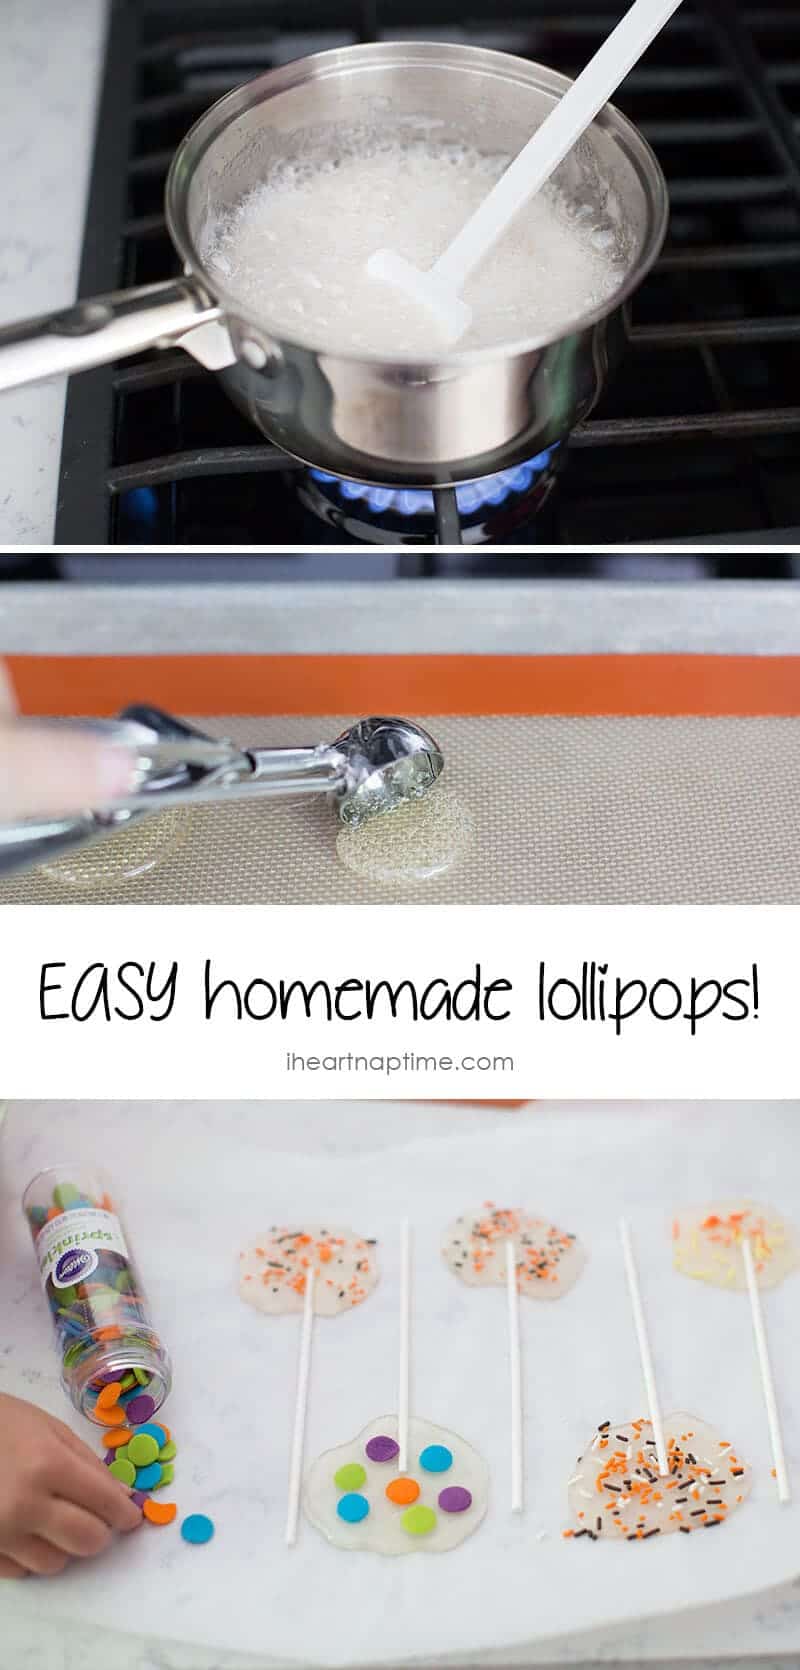 Easy homemade lollipops on iheartnaptime.com